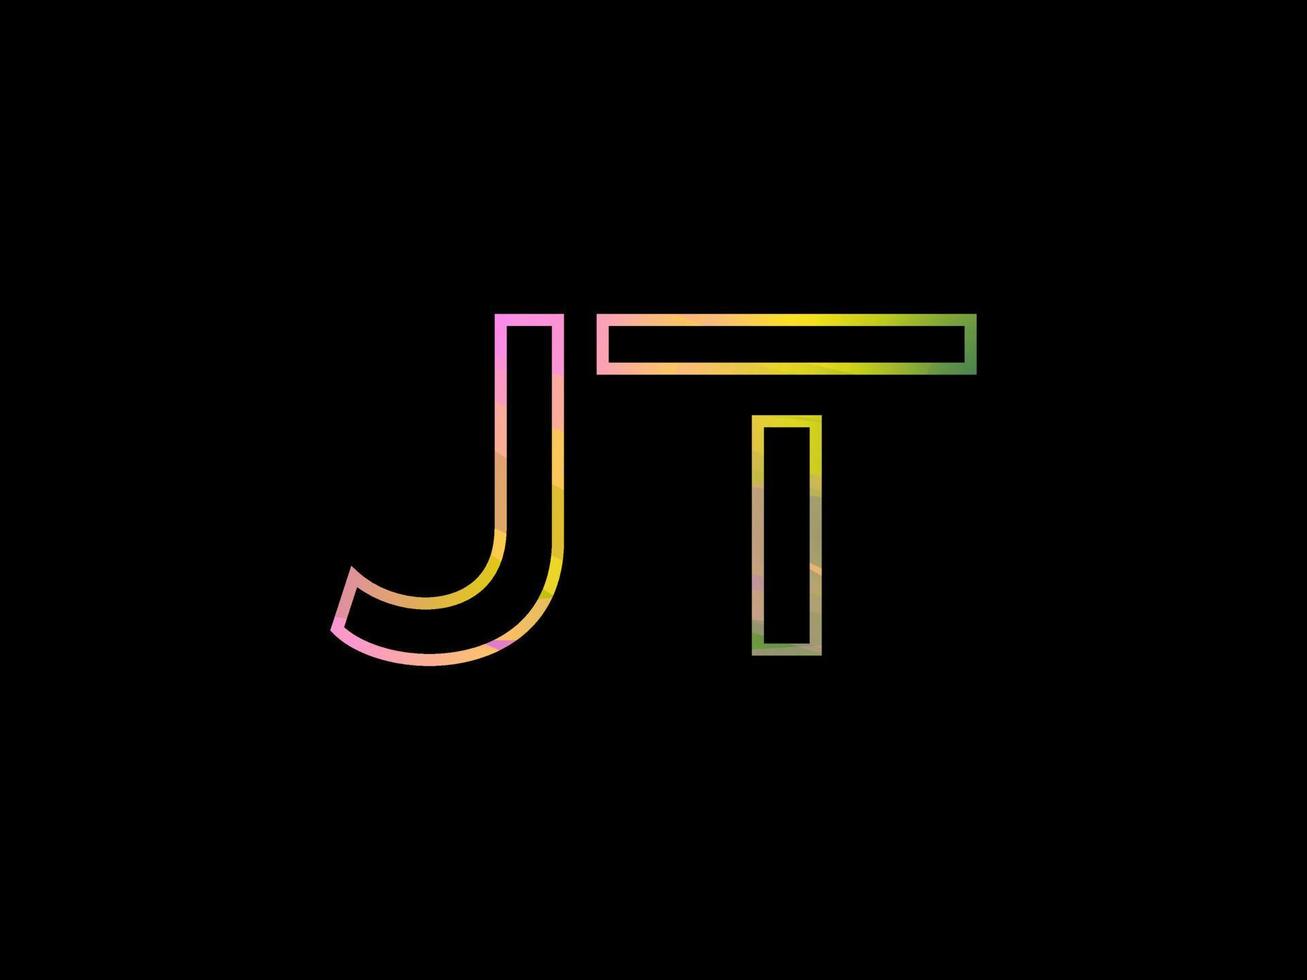 jt brief logo met kleurrijk regenboog structuur vector. pro vector